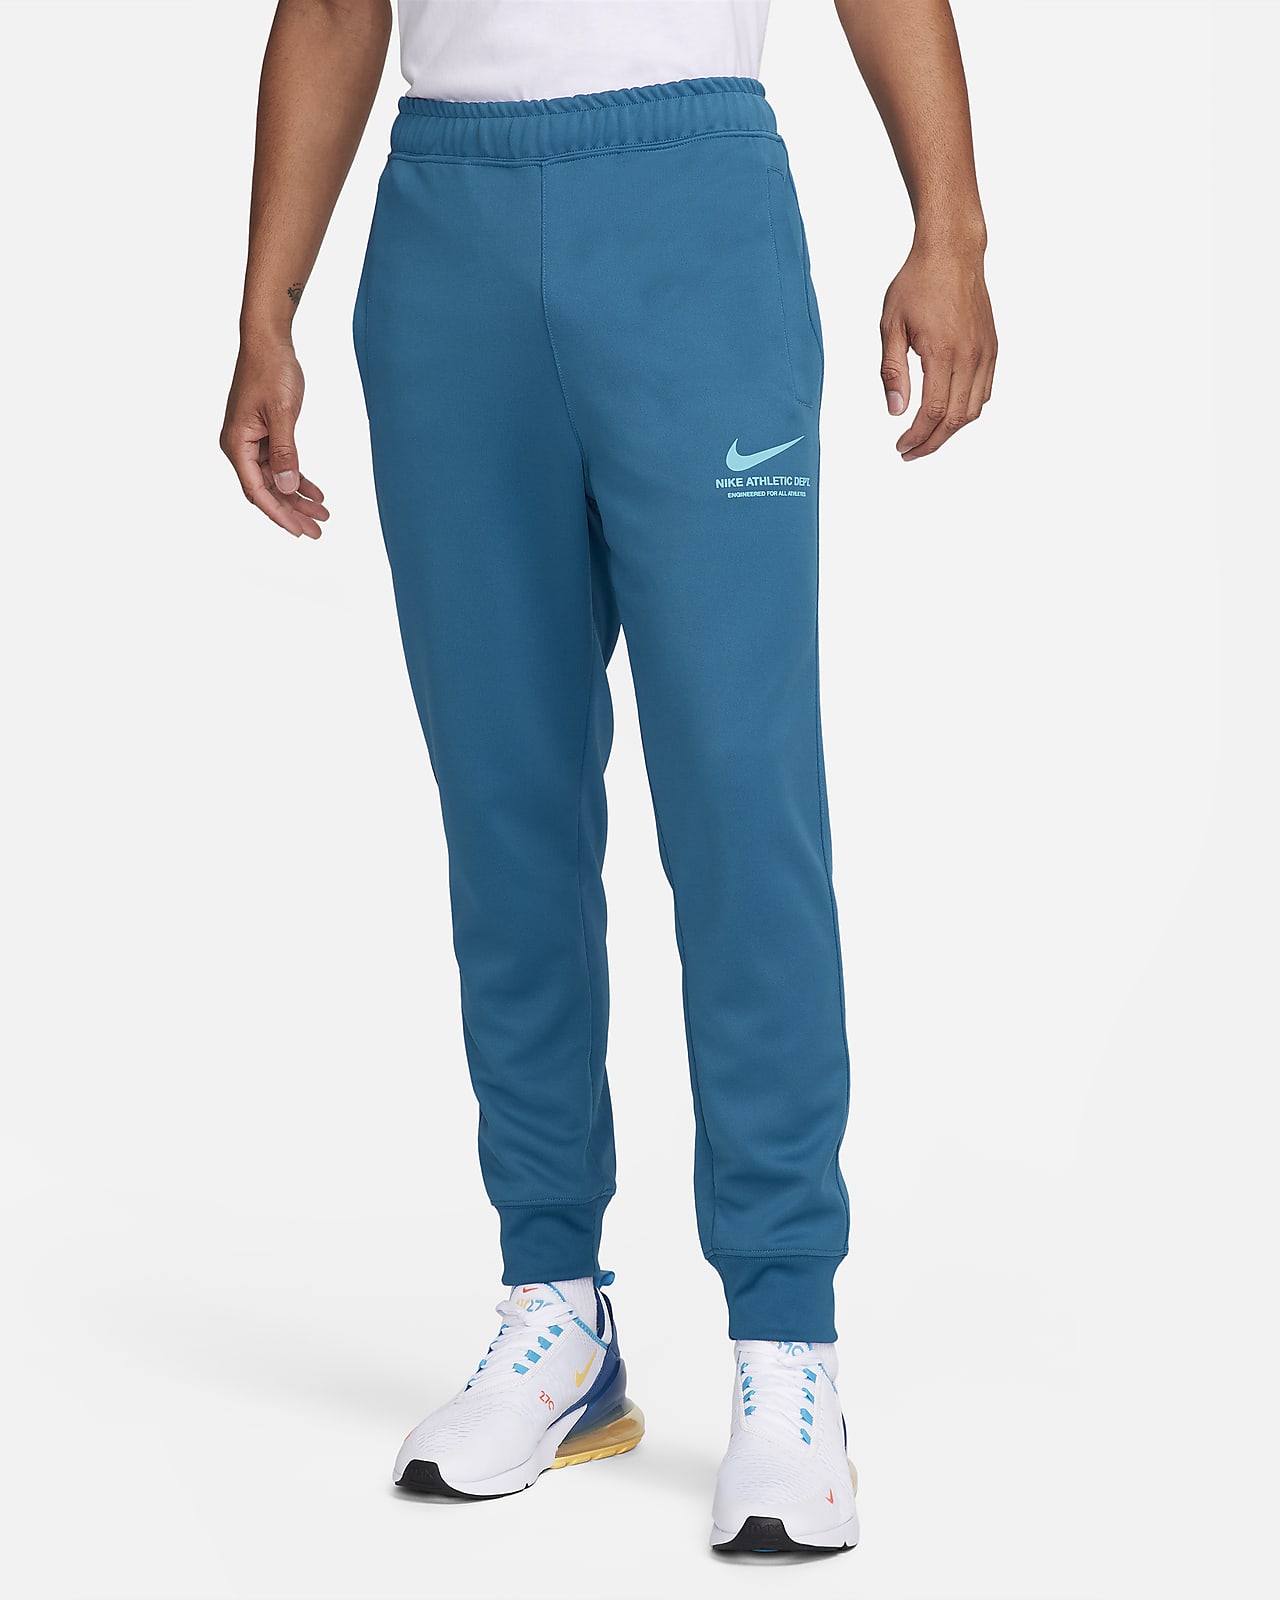 Nike Sportswear Men's Trousers. Nike CZ